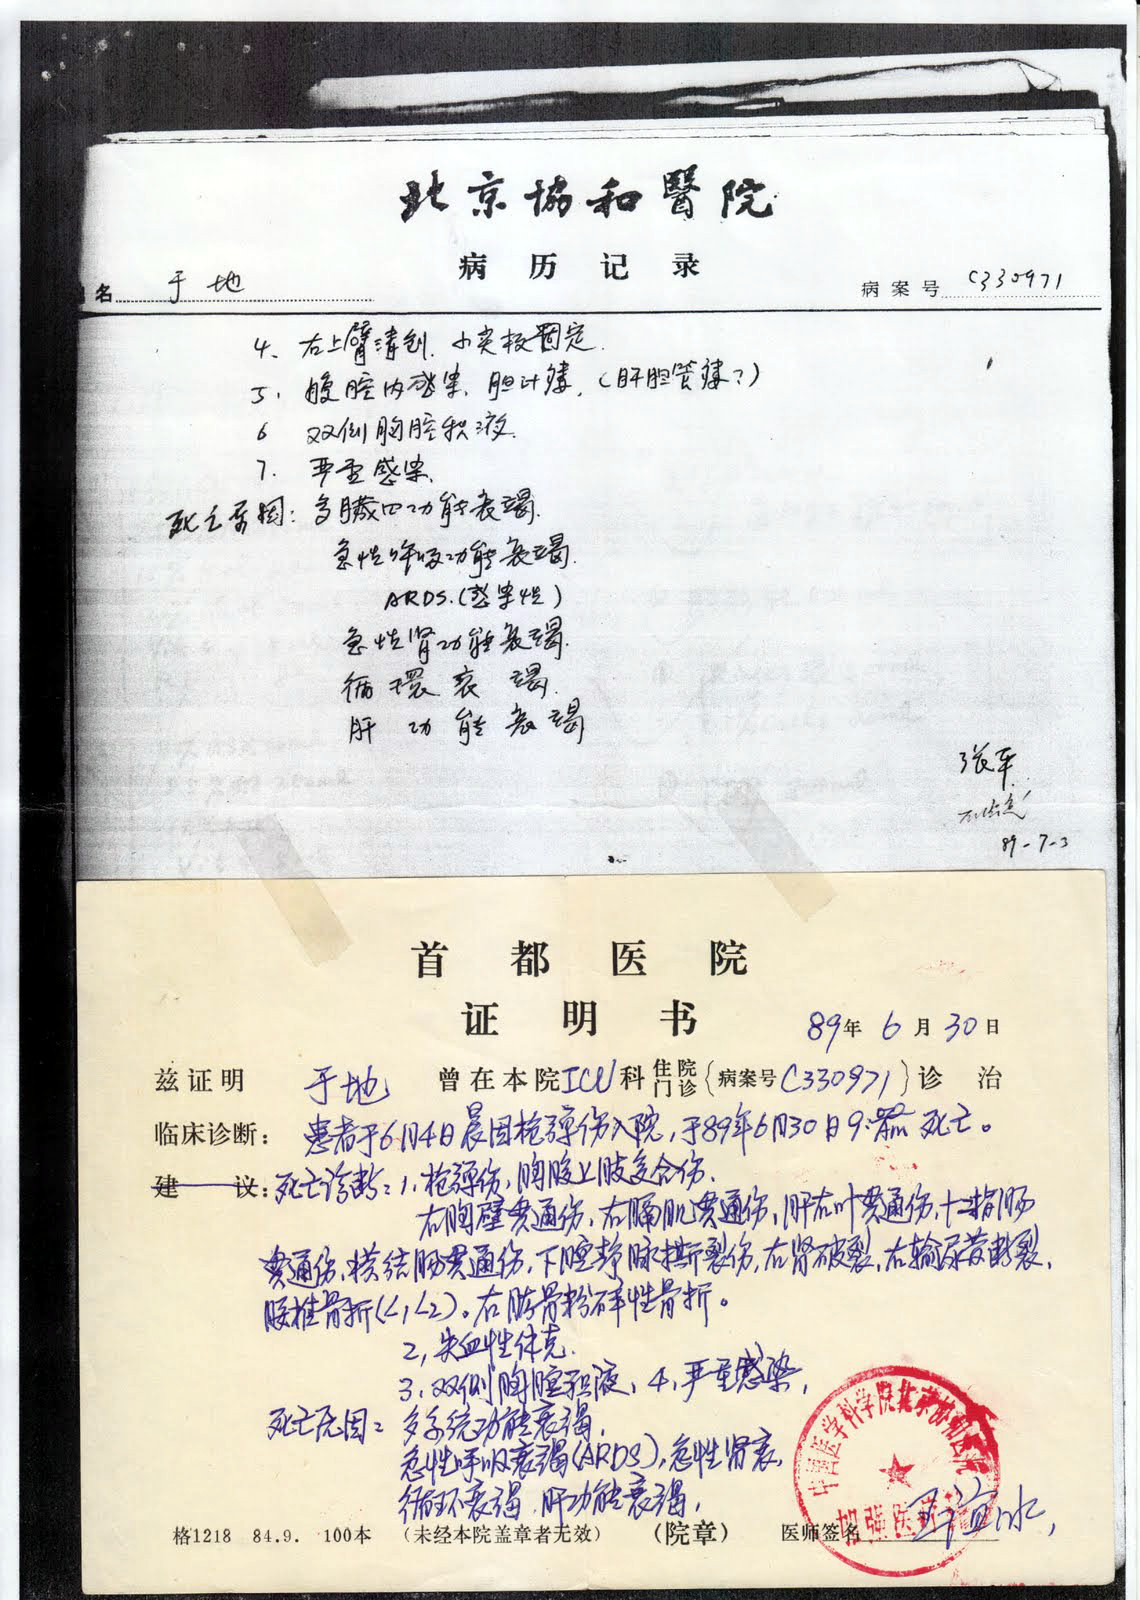 北京协和医院的于地病历记录和首都医院发的死亡证明书影印件